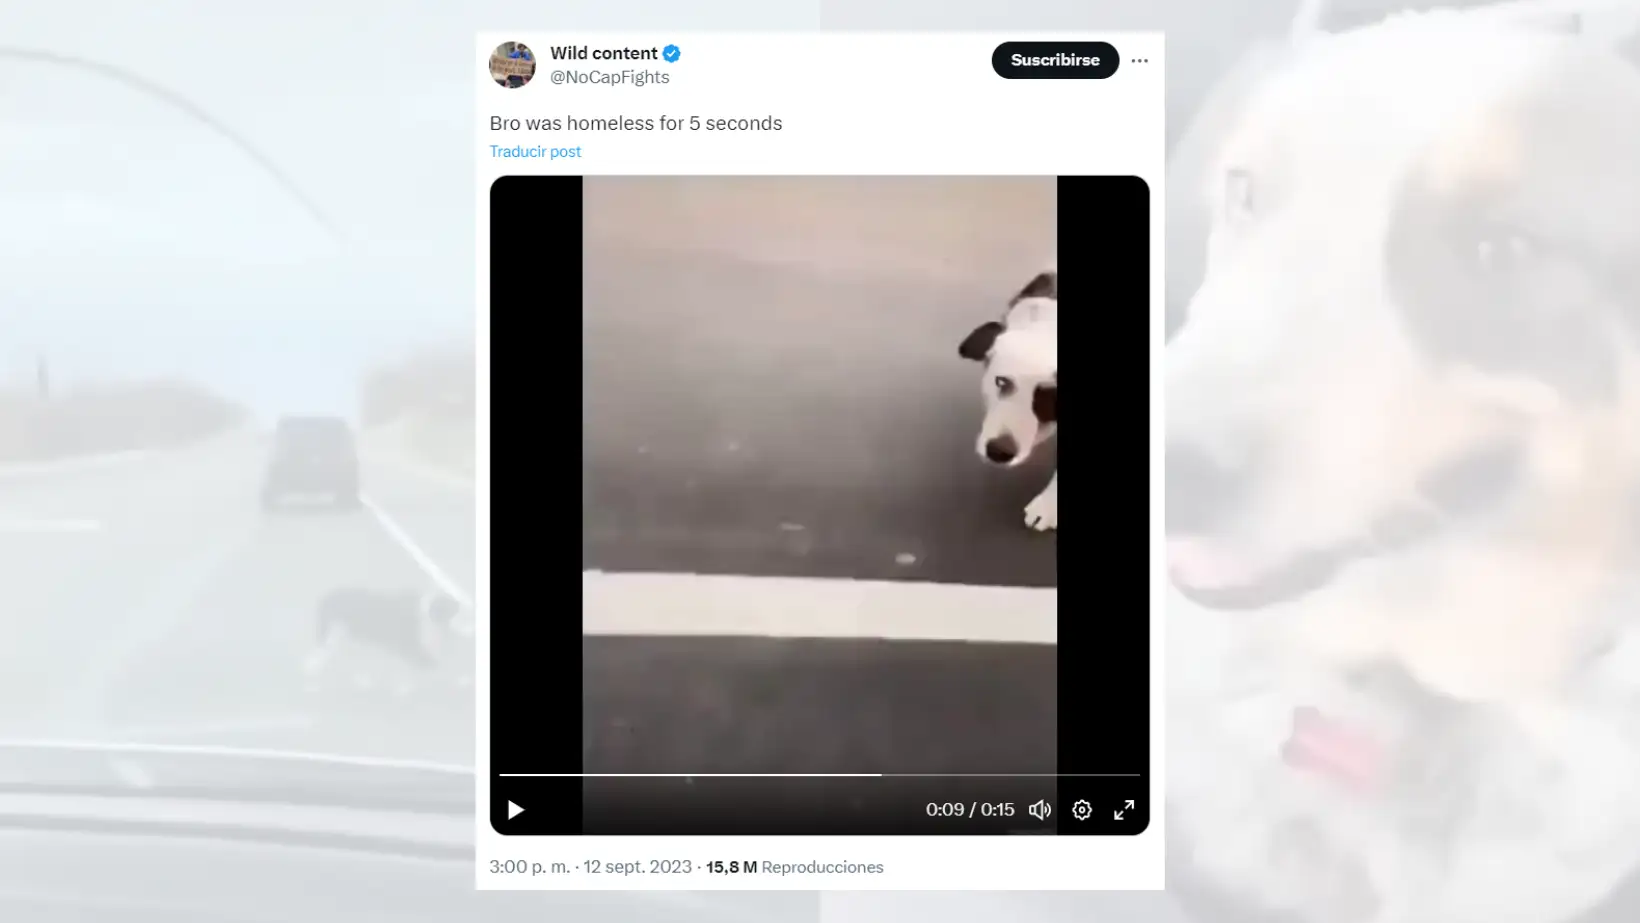 Tuit viral en el que comparte el vídeo del perro rescatado.